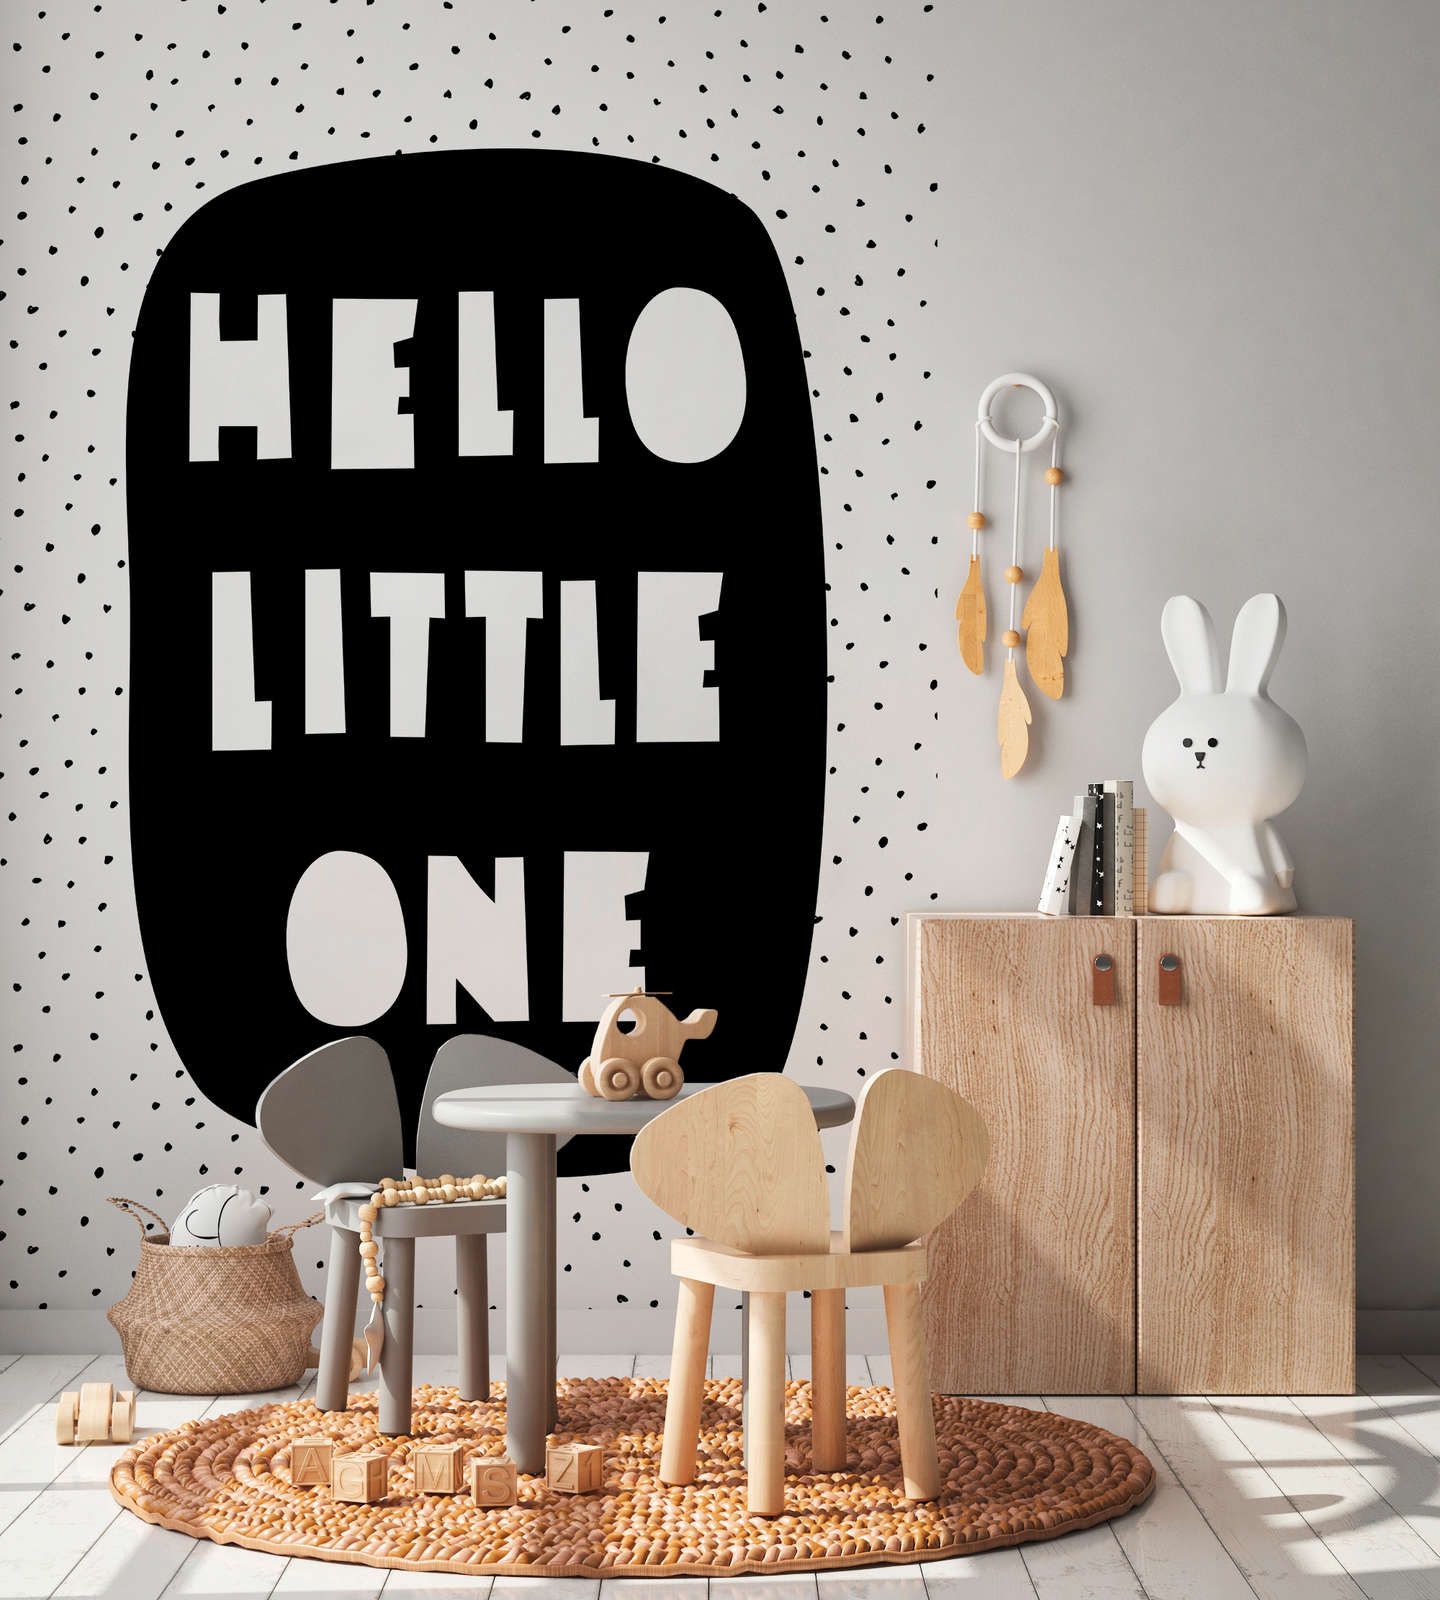             papiers peints à impression numérique pour chambre d'enfant avec inscription "Hello Little One" - intissé lisse & nacré
        